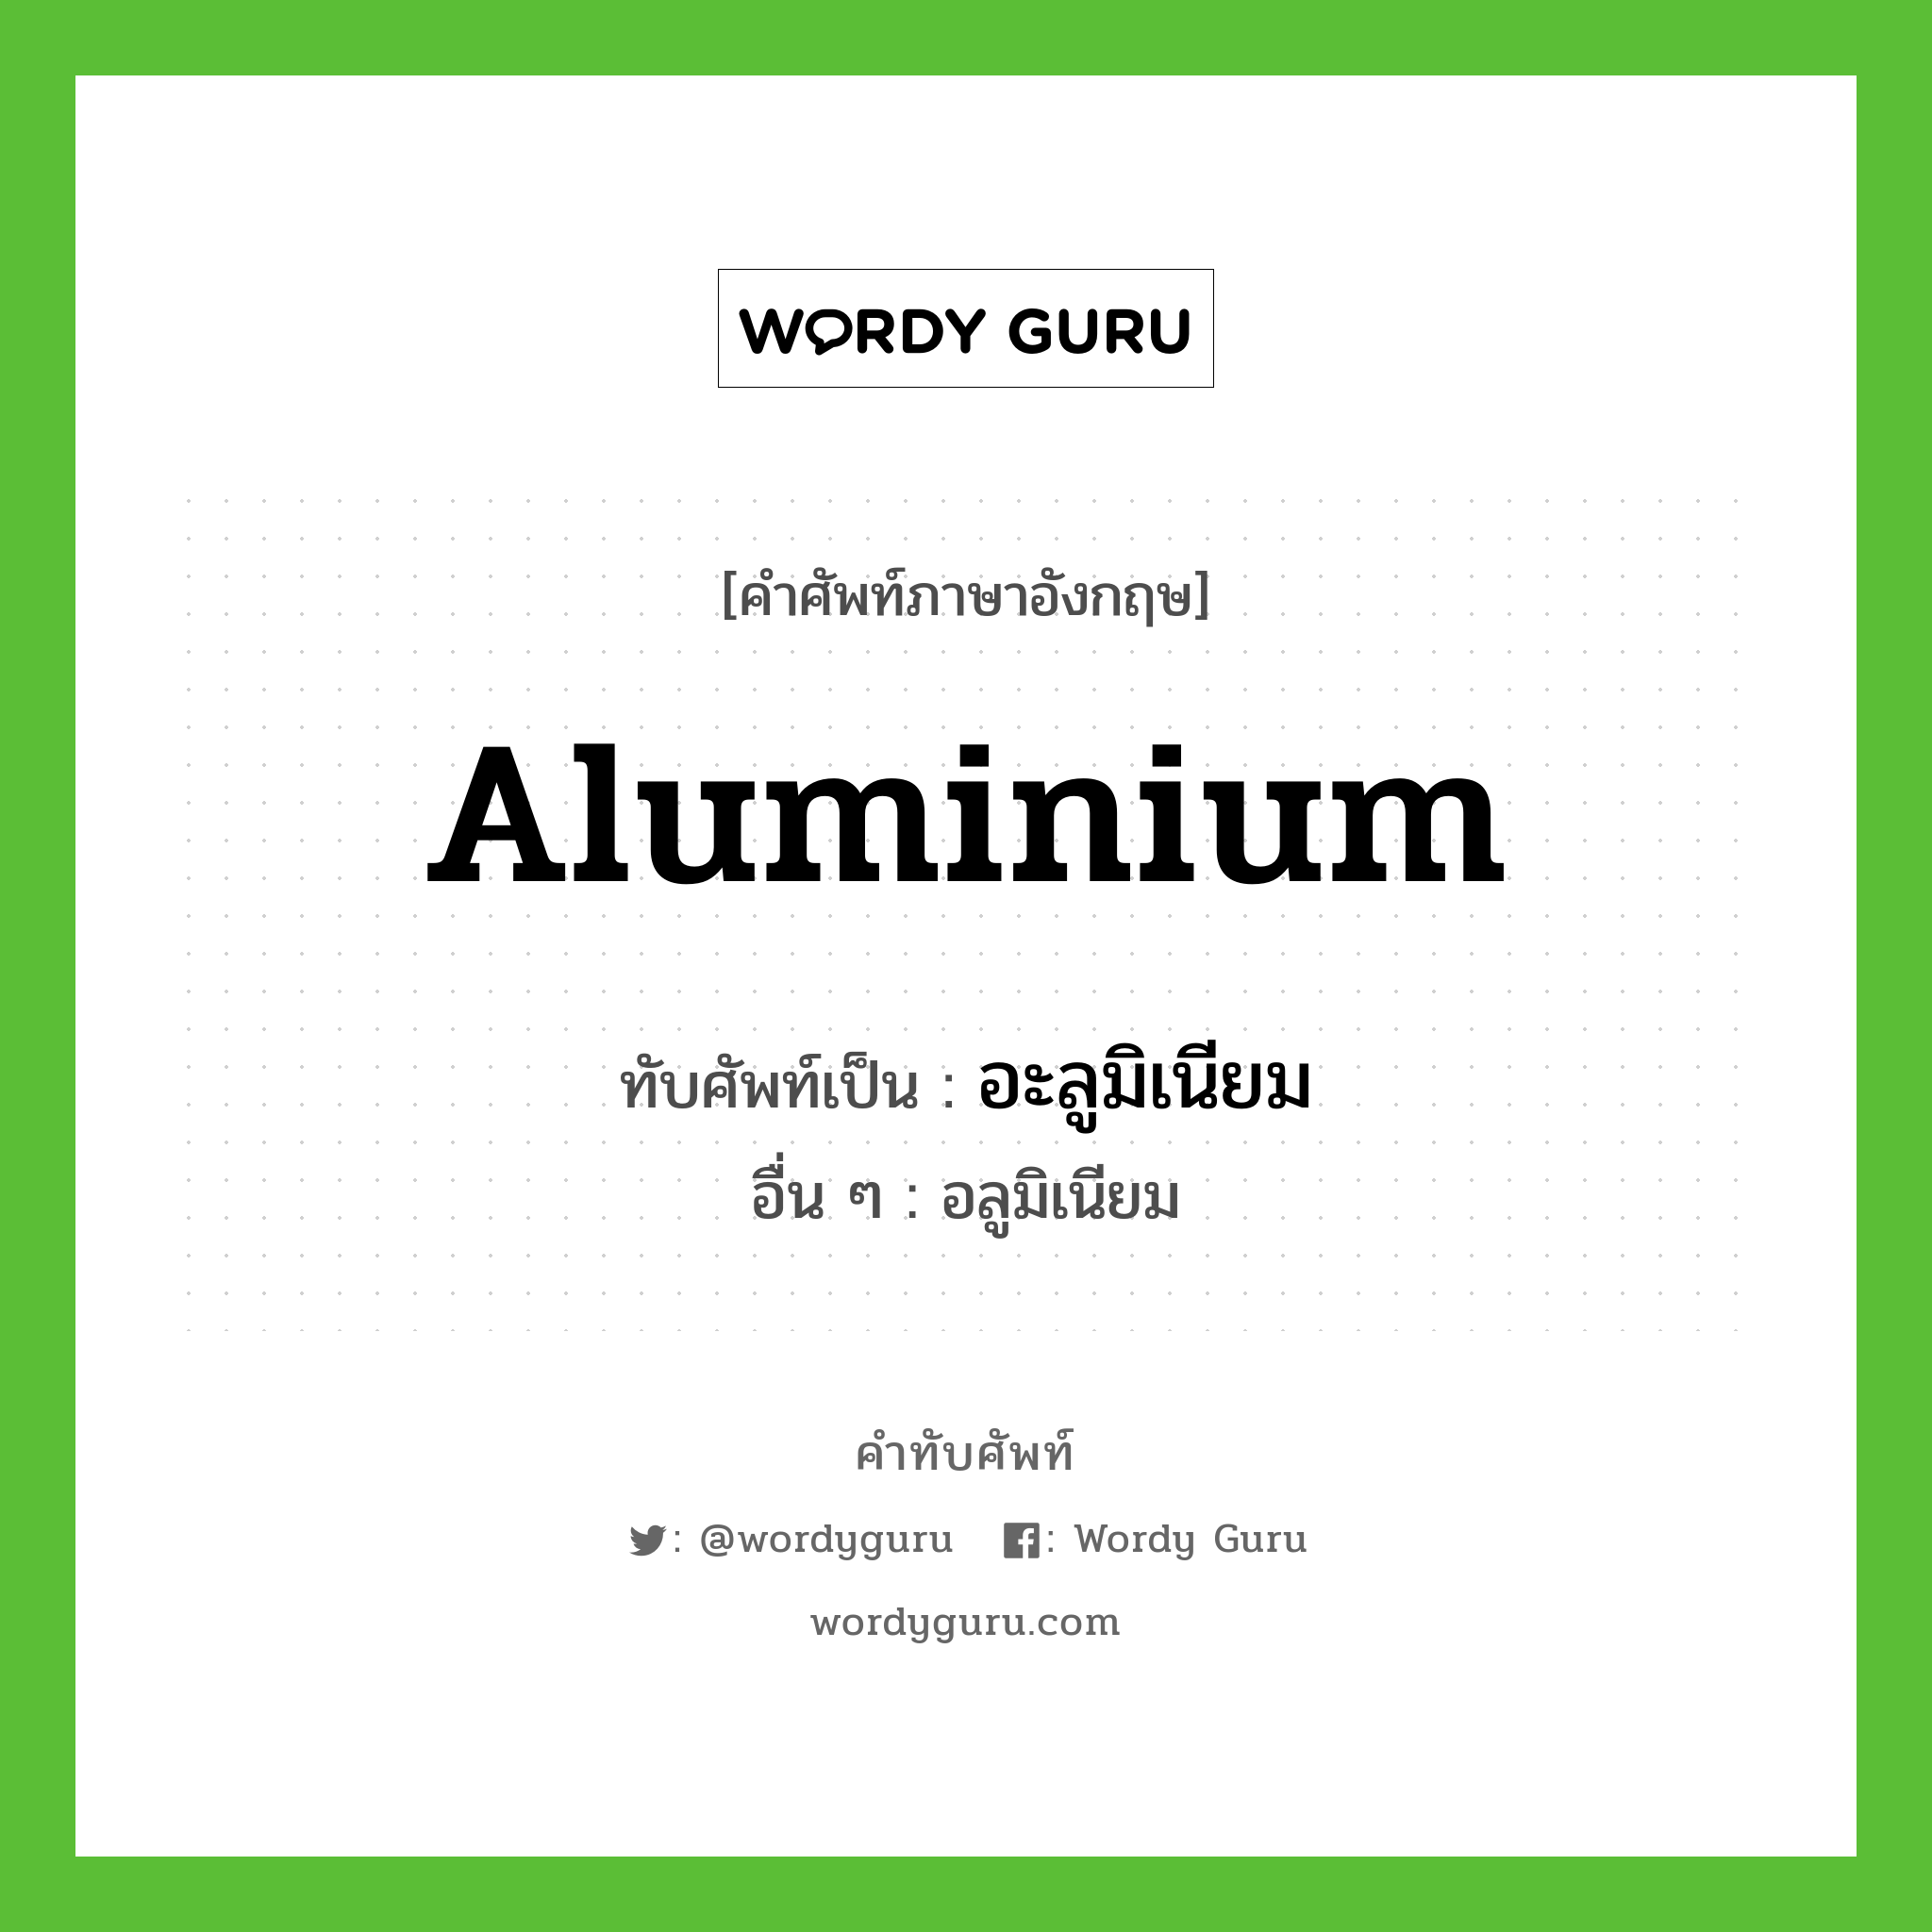 อะลูมิเนียม เขียนอย่างไร?, คำศัพท์ภาษาอังกฤษ อะลูมิเนียม ทับศัพท์เป็น aluminium อื่น ๆ อลูมิเนียม